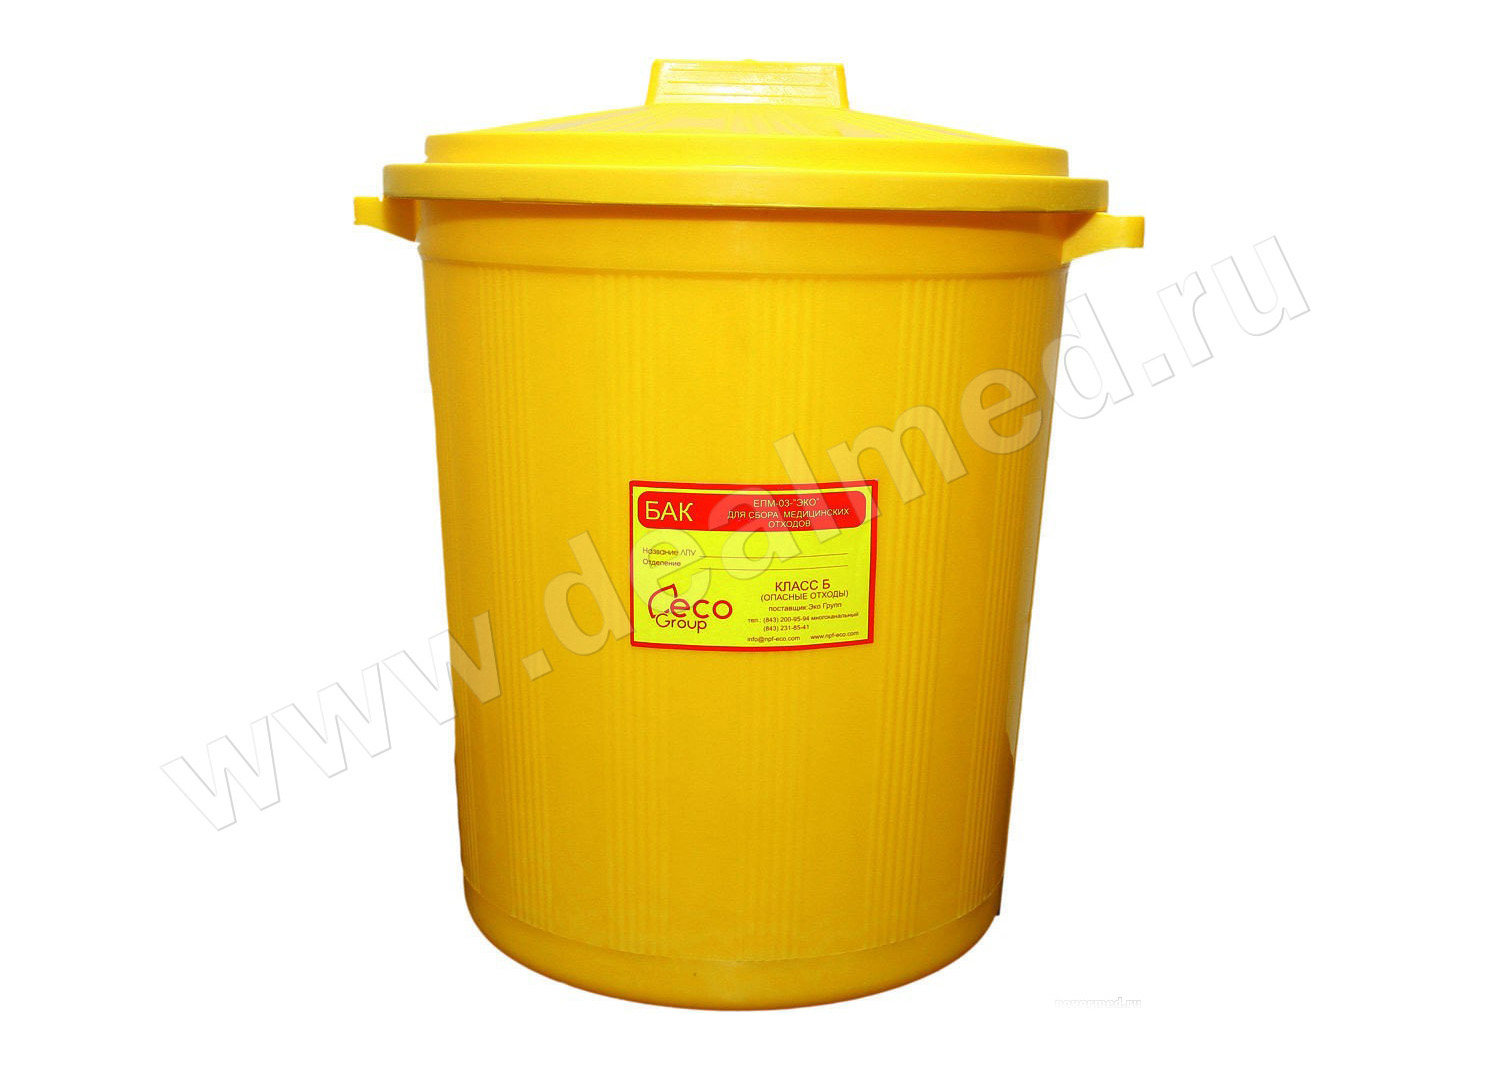 Бак для сбора медицинских отходов кл. Б на 50 литров, с крышкой, жёлтый, Россия